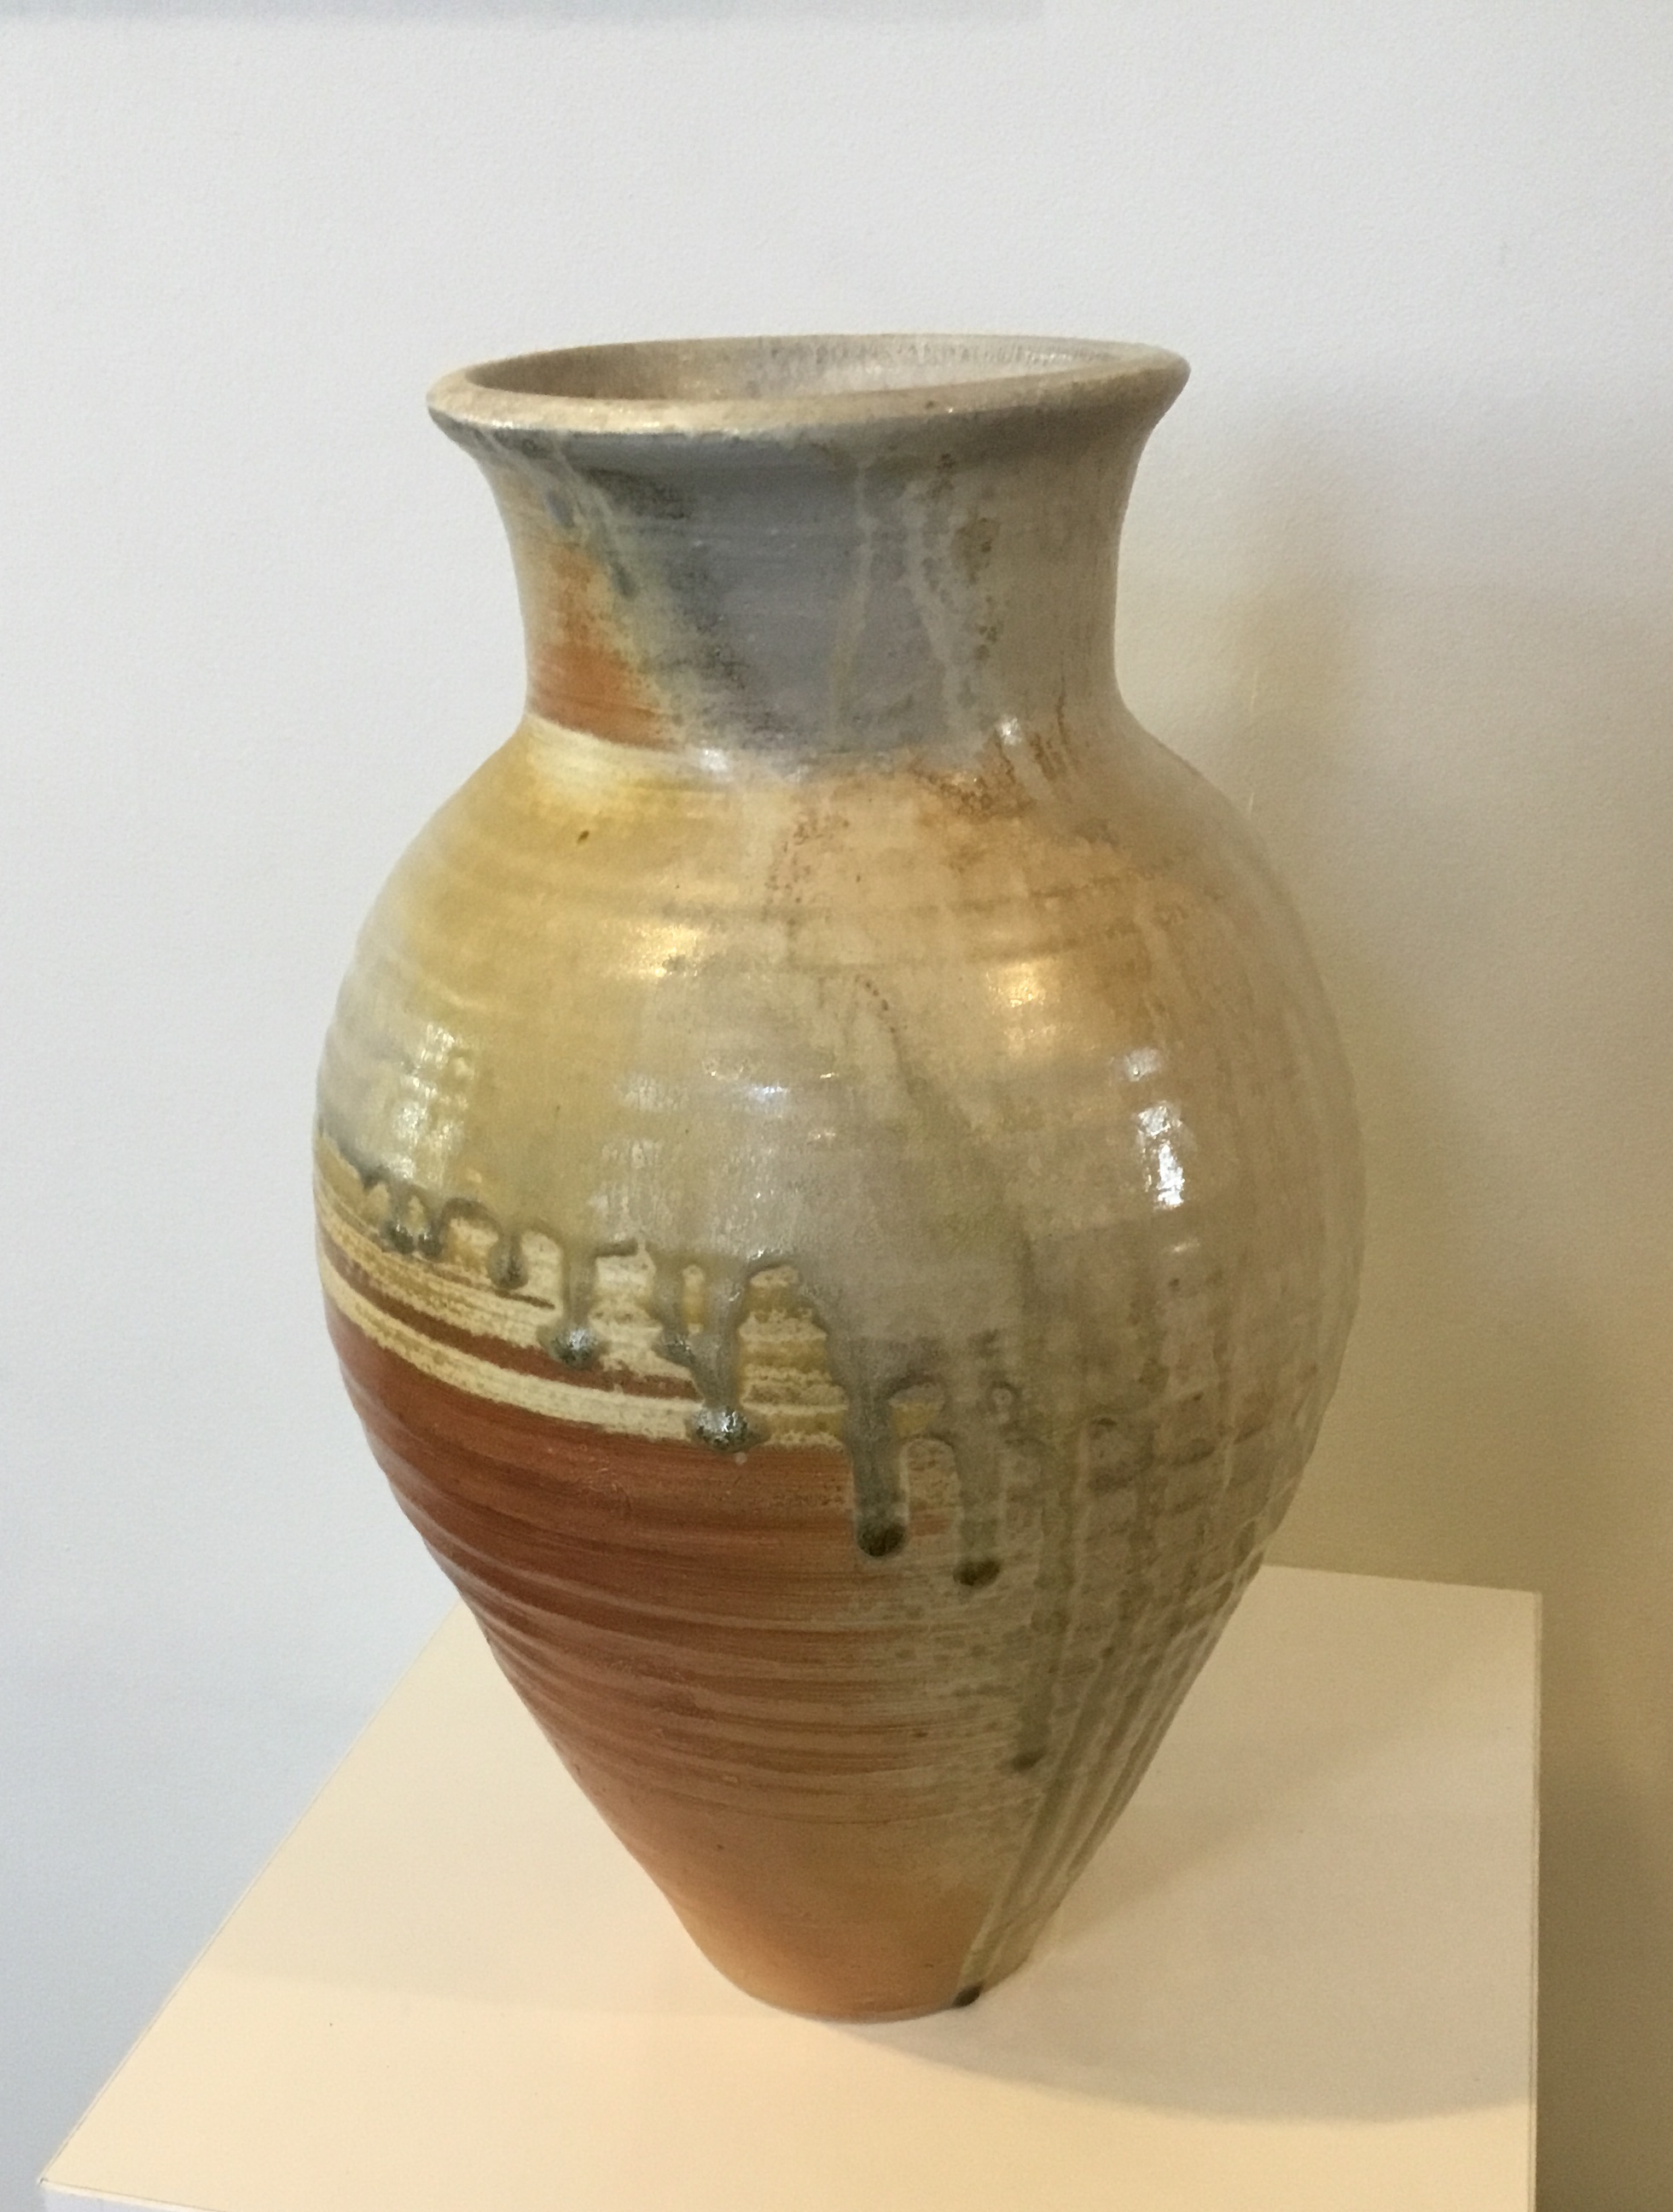 Vase
wood-fired stoneware
13"
$130.